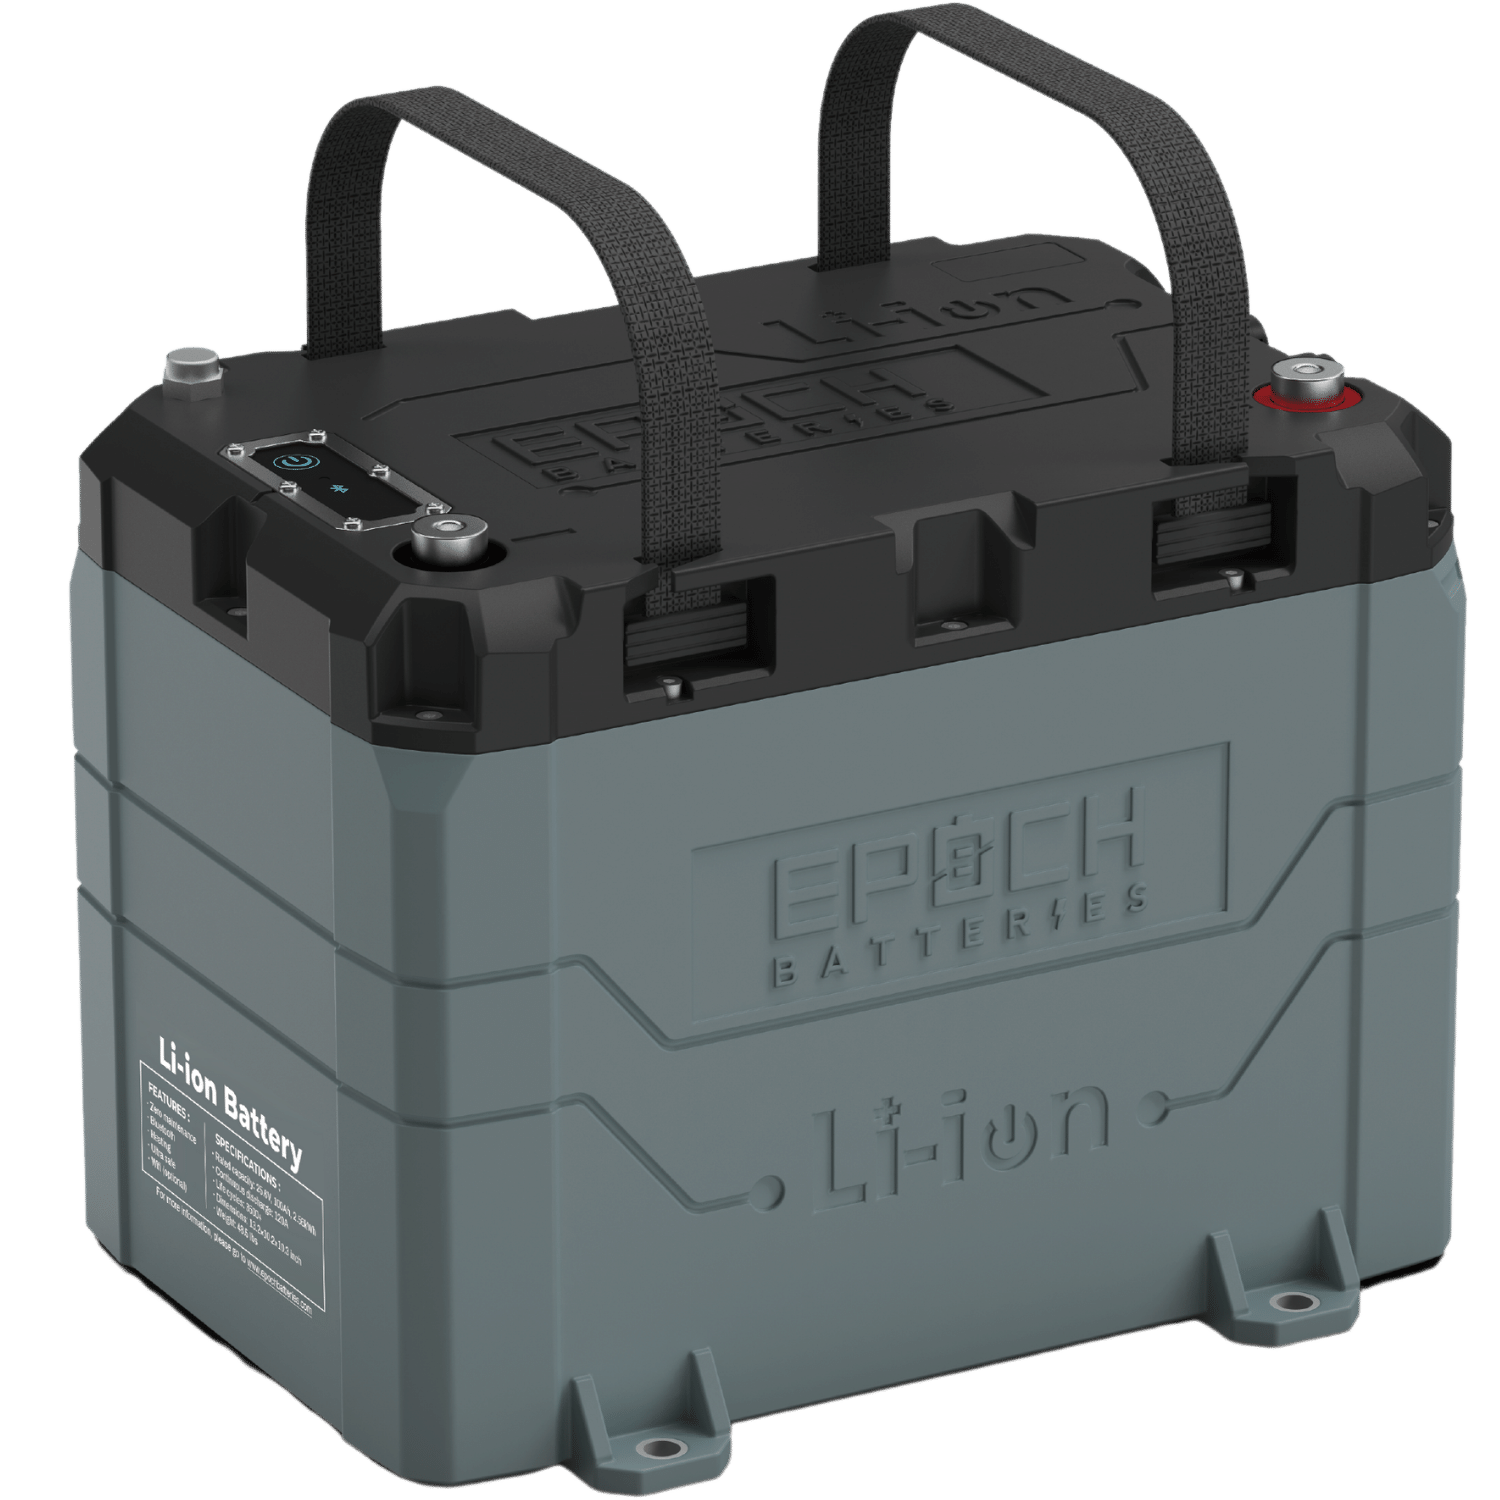 24V 100Ah LiFePO4 - EP24100 Bluetooth